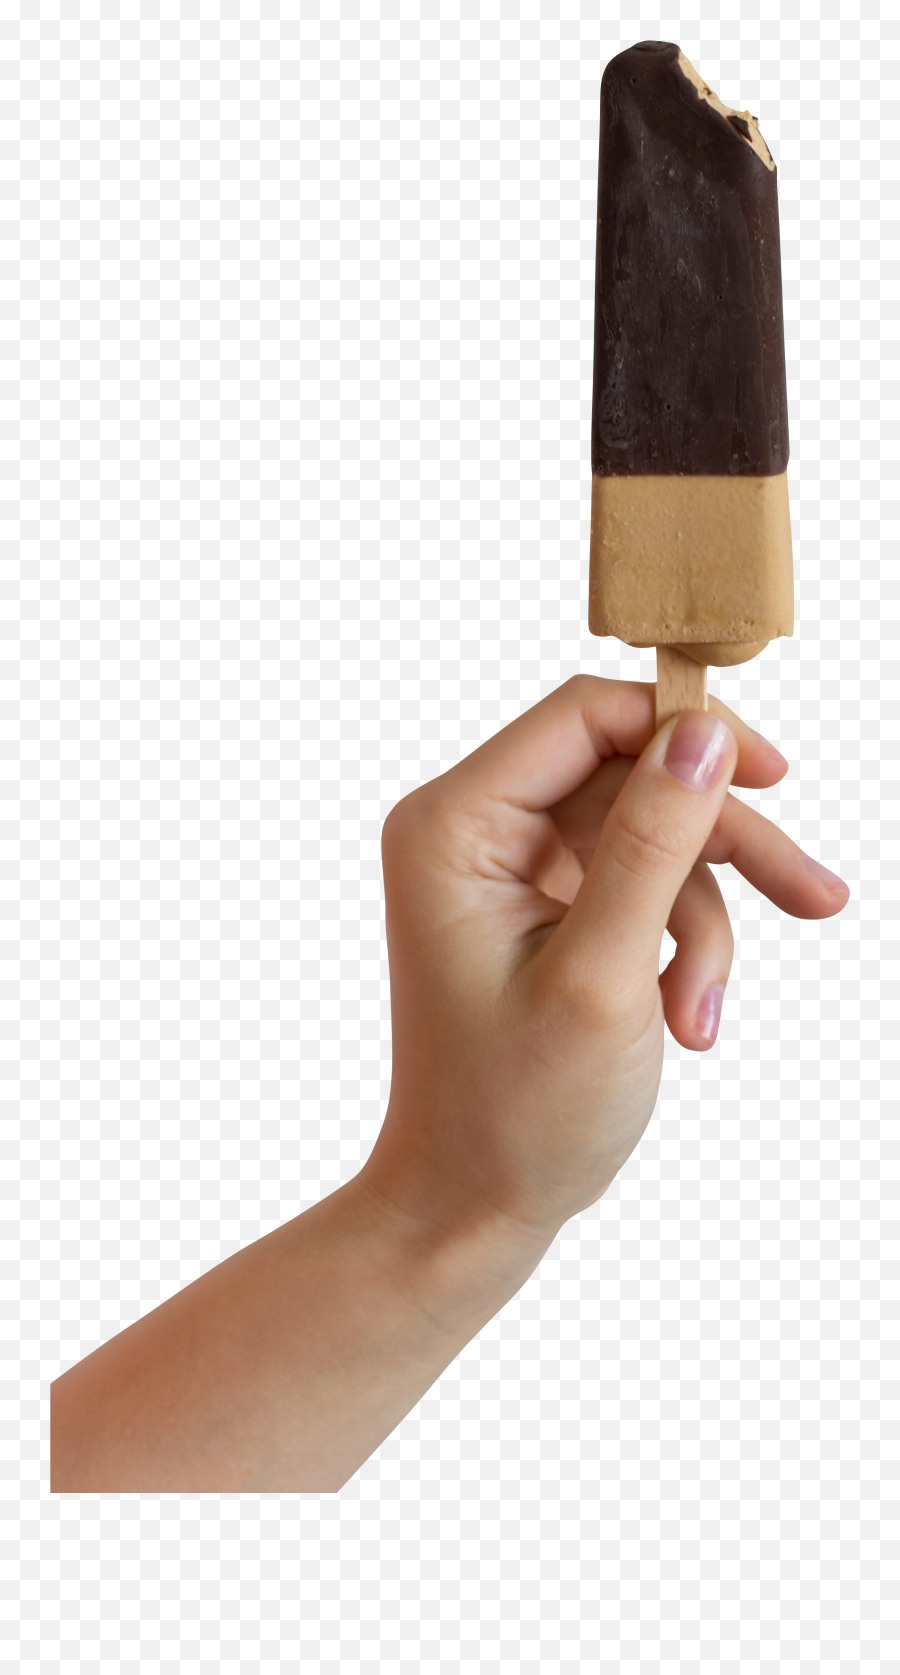 Chocolate Ice Cream Stick Transparent Background Png - Free Ice Cream Bar,Ice Cream Transparent